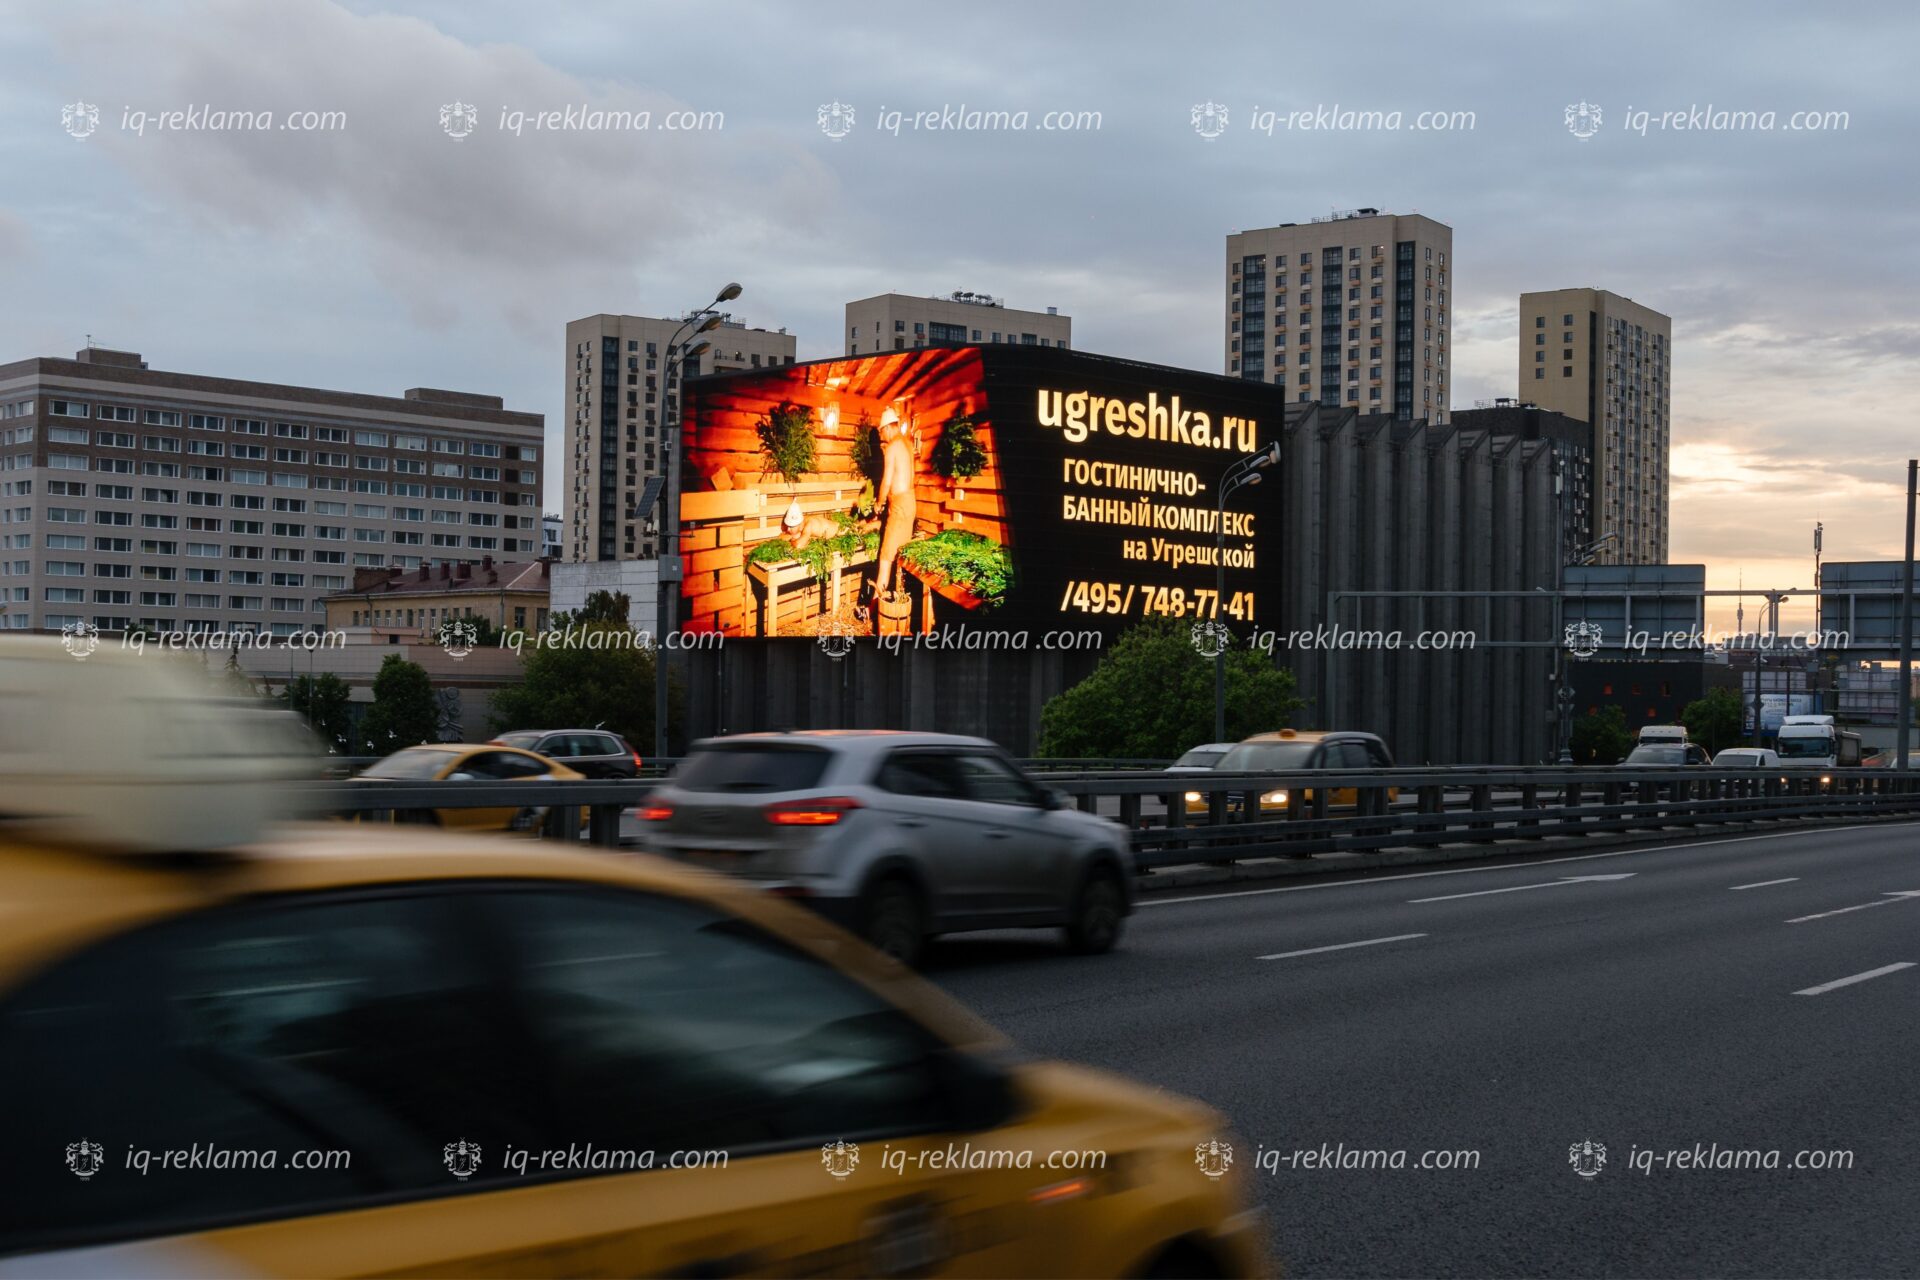 Digital реклама в Москва-сити на видео экранах. Реклама на медиафасаде на трассе клиента «Угрешские бани»